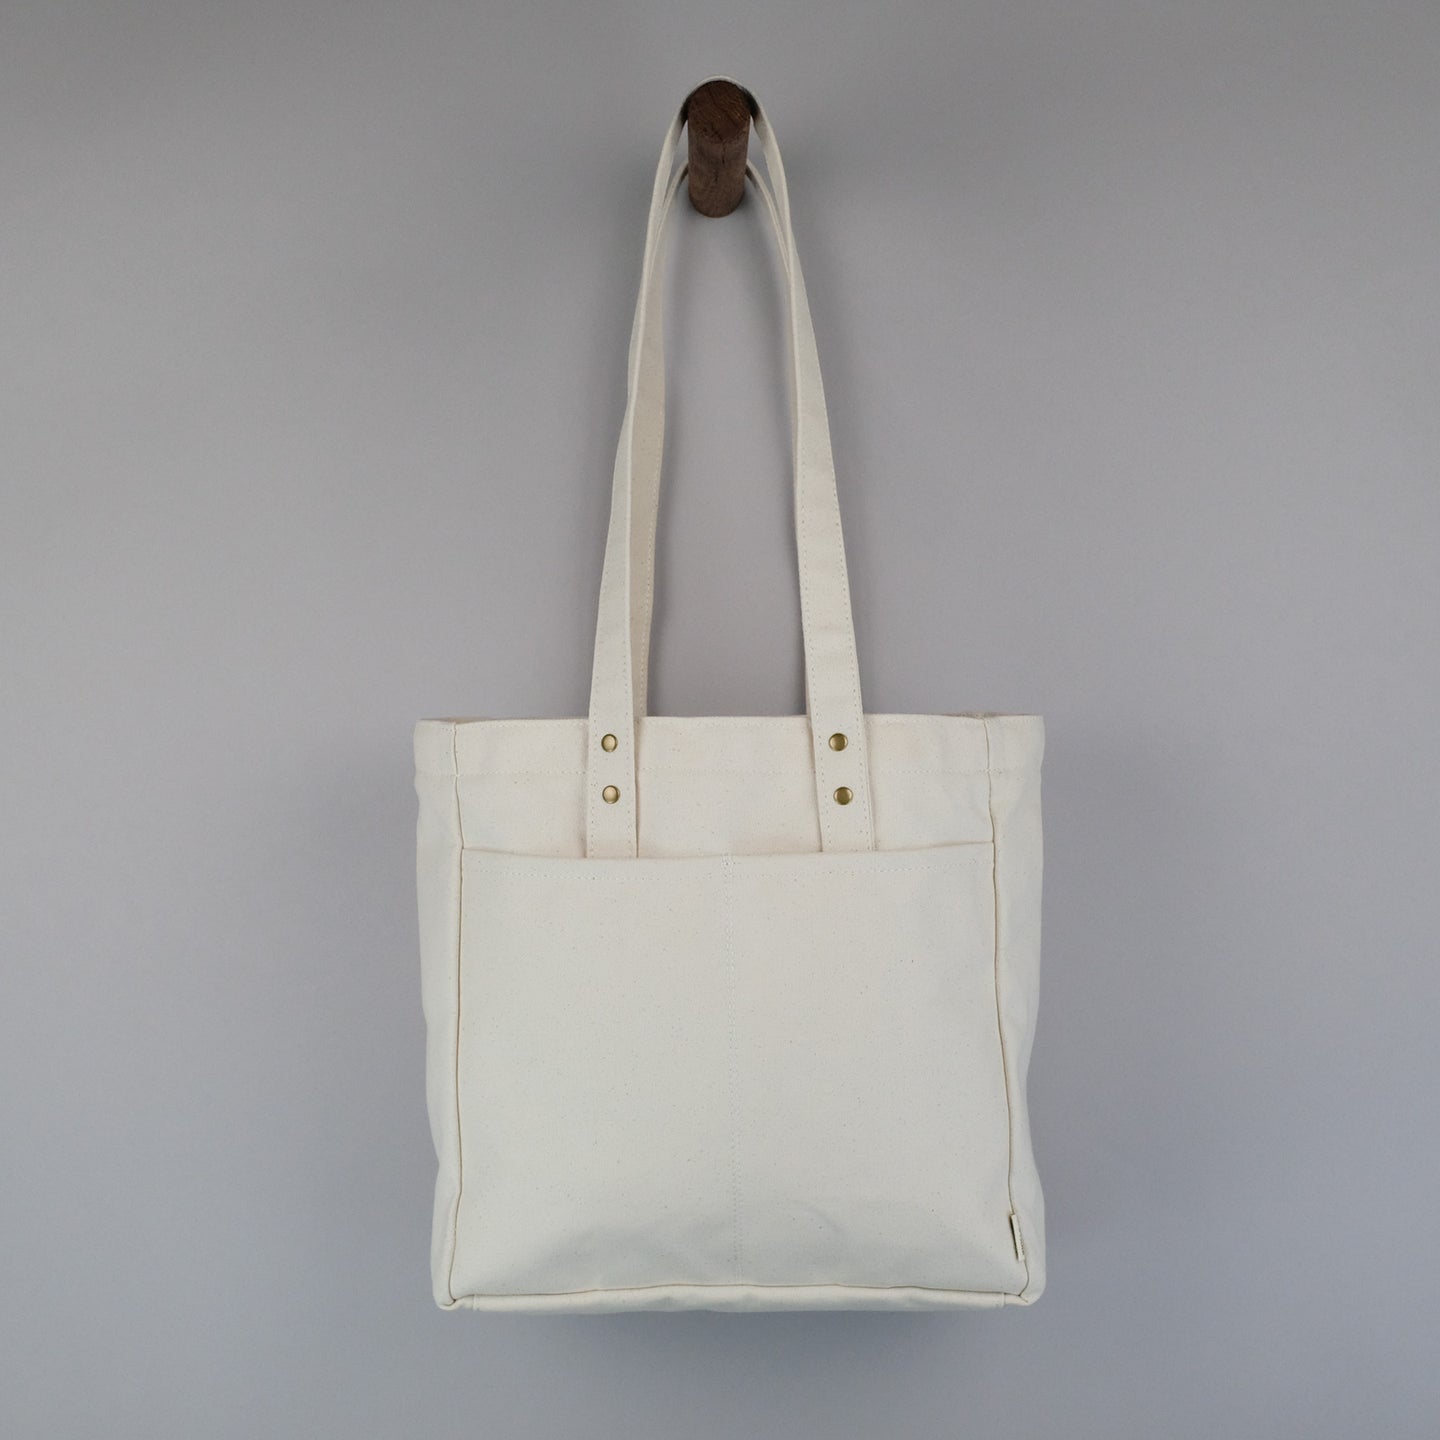 Women's Handbags, Tote Bags & More